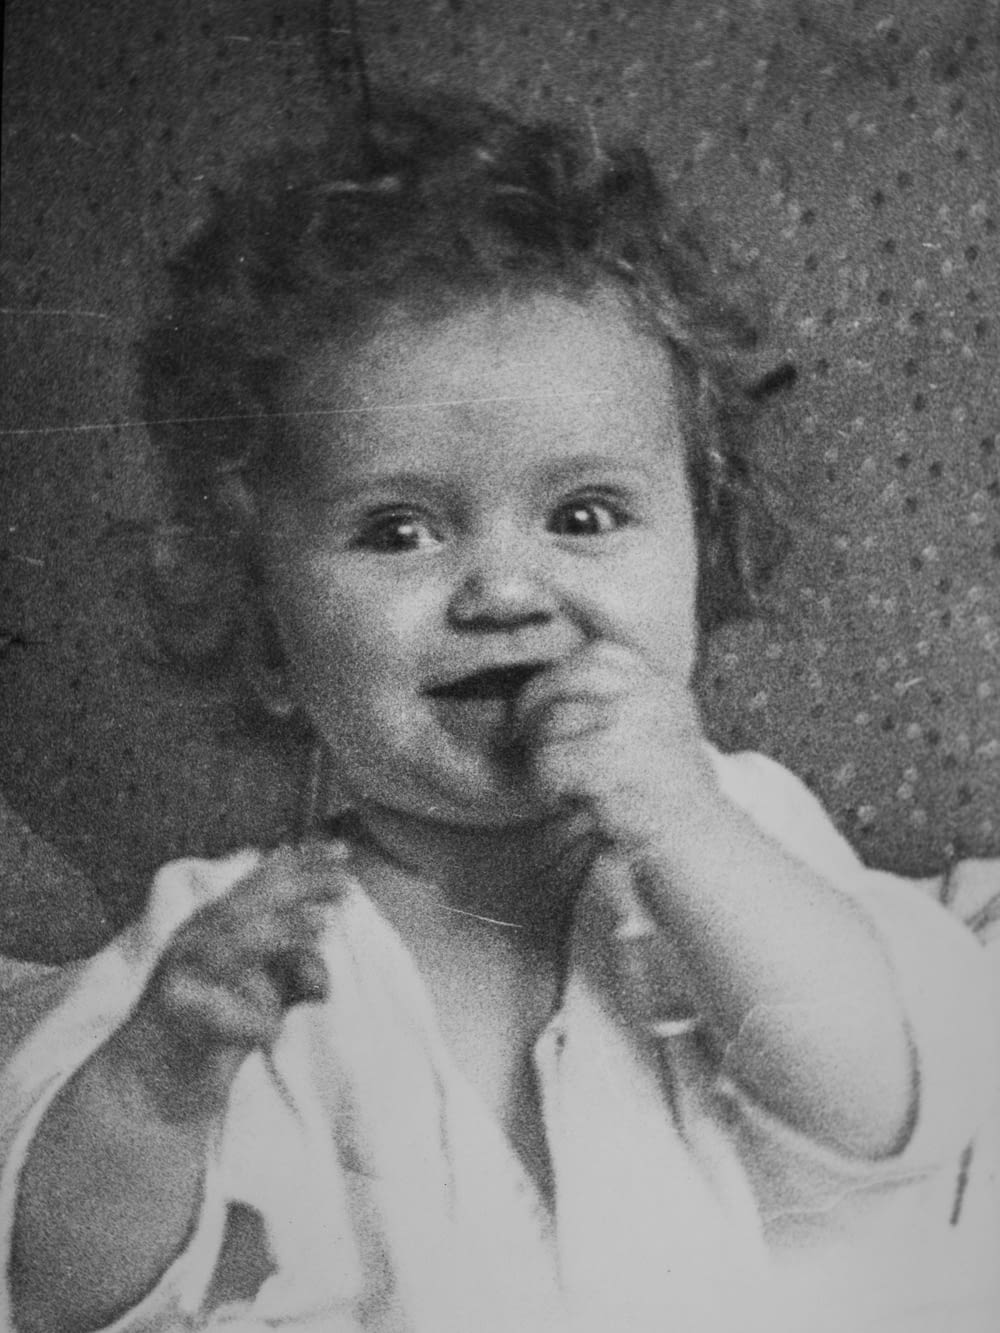 Una foto en blanco y negro de una niña comiendo algo